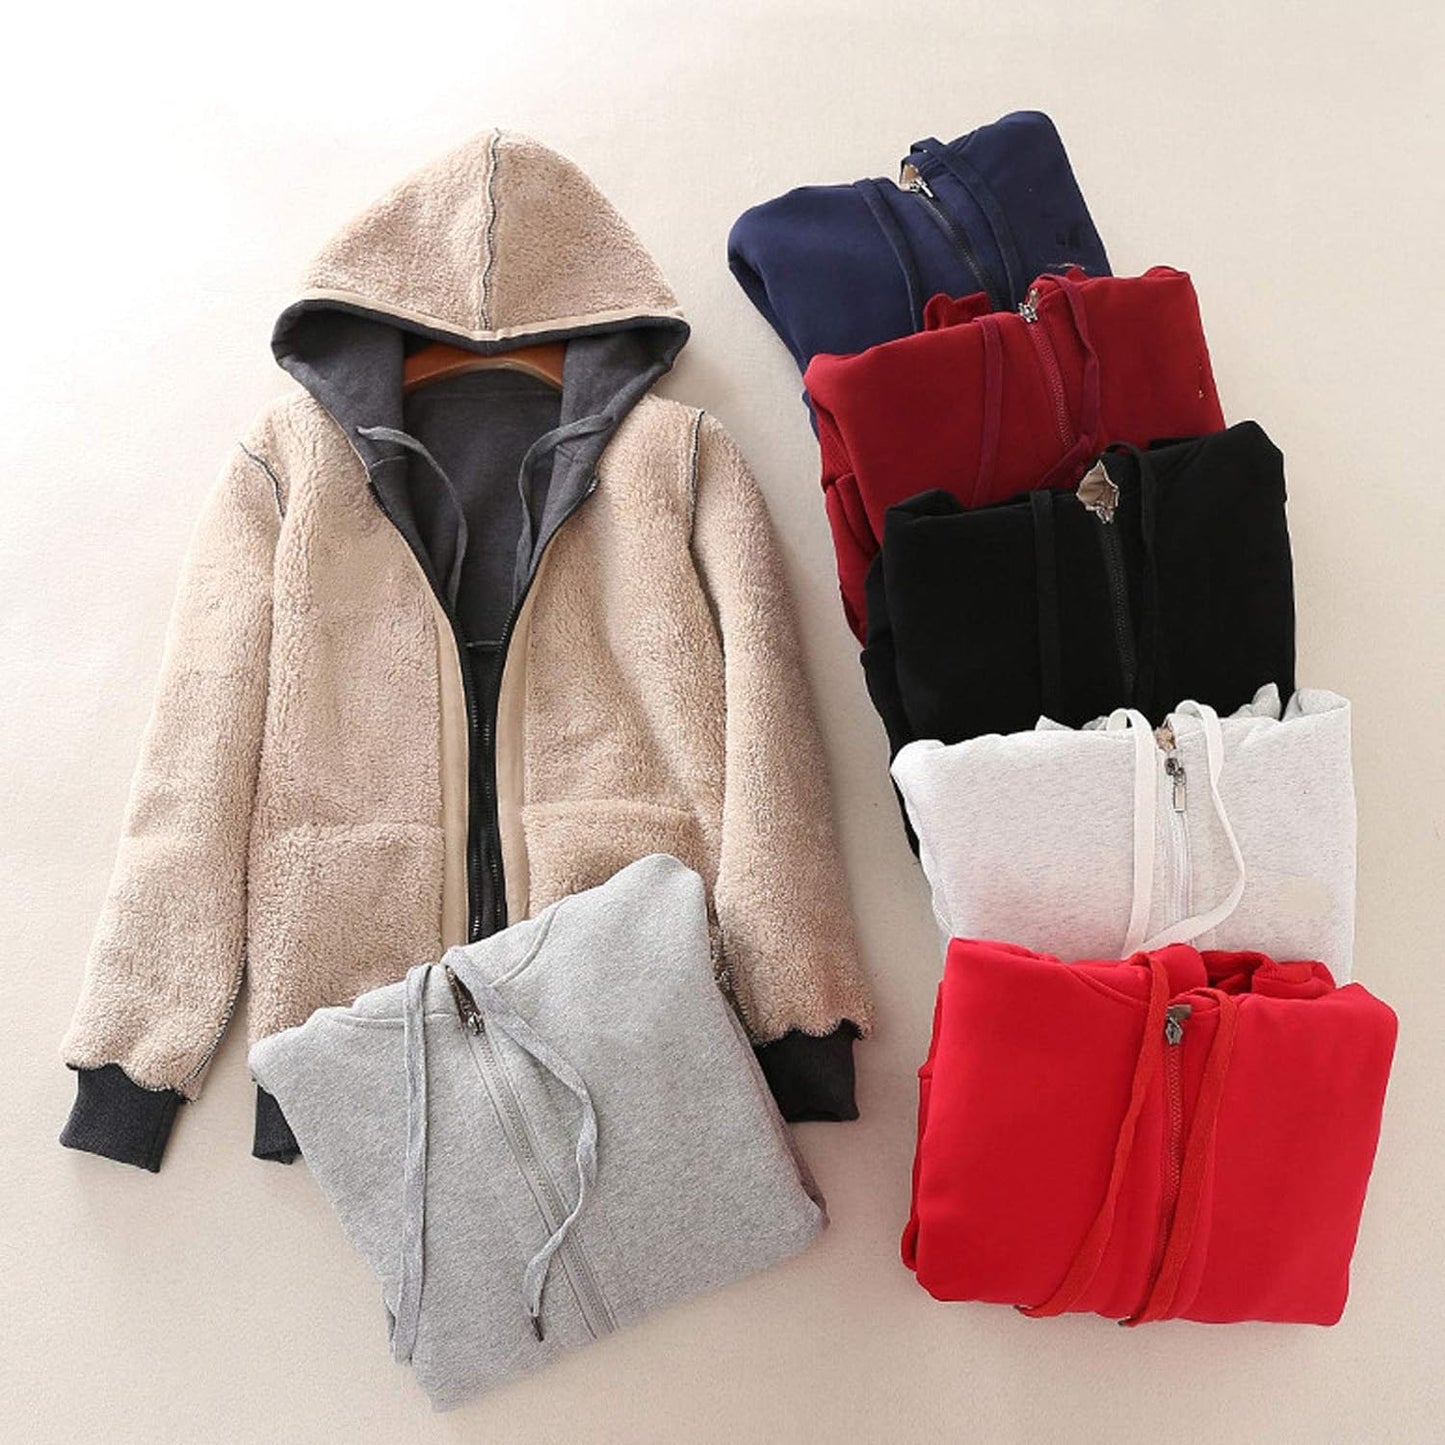 Women'S Full Zip Fleece Hoodie Warm Sherpa Lined Sweatshirt Winter Jackets with Pockets